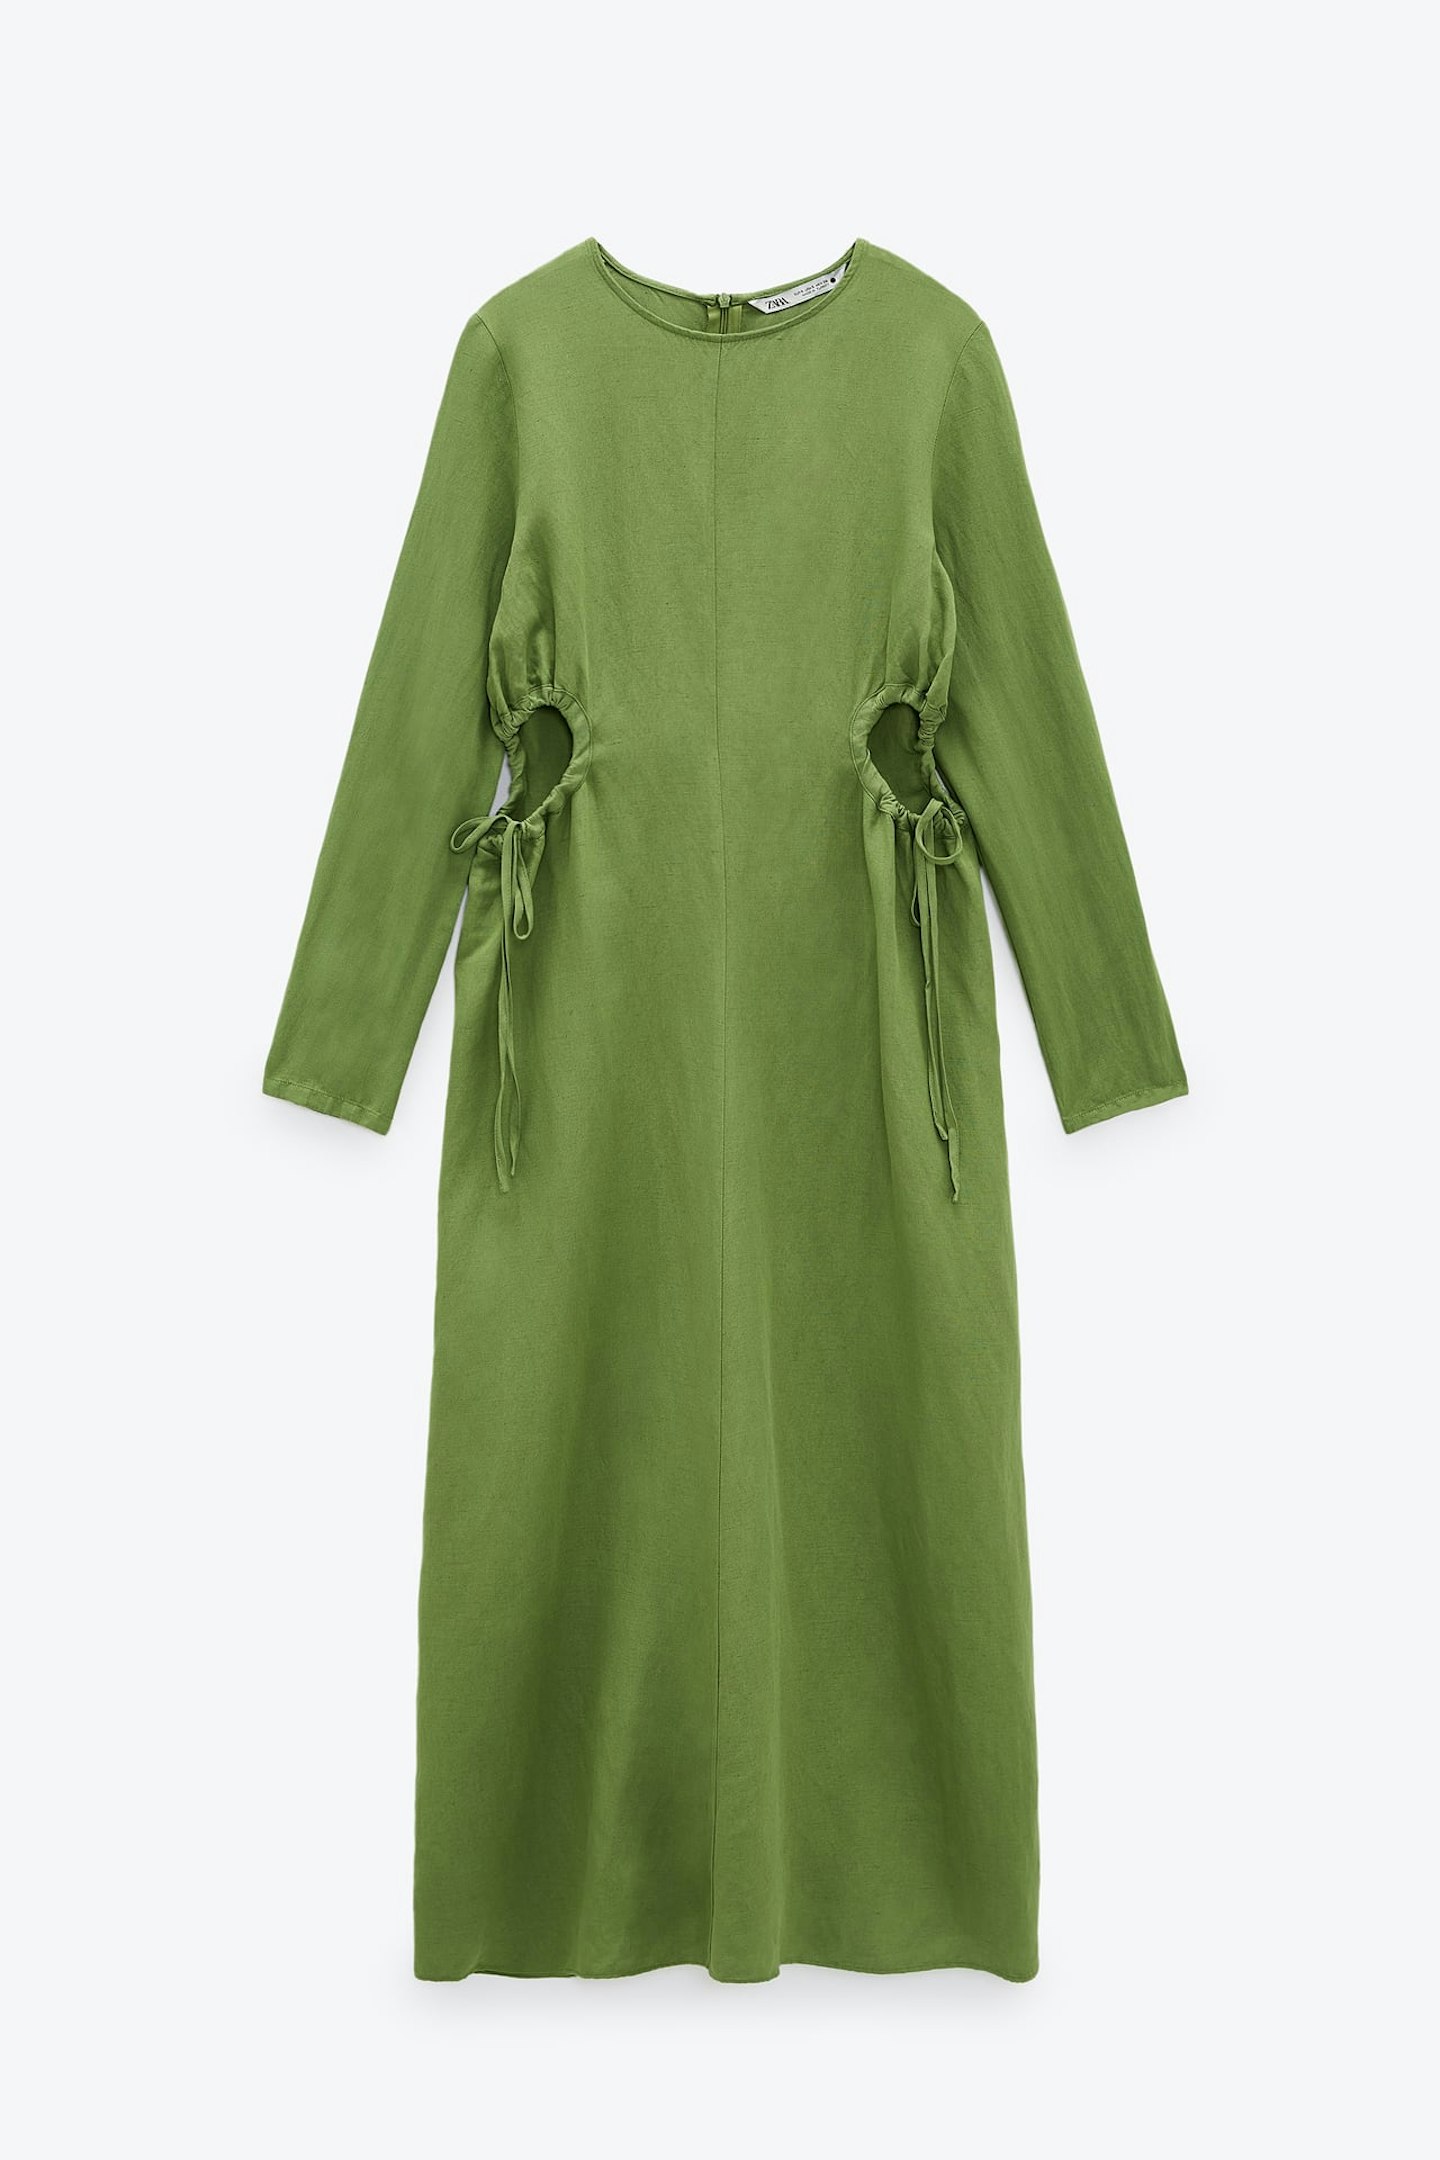 Zara, Linen Blend Dress With Cut Out Detail, £49.99